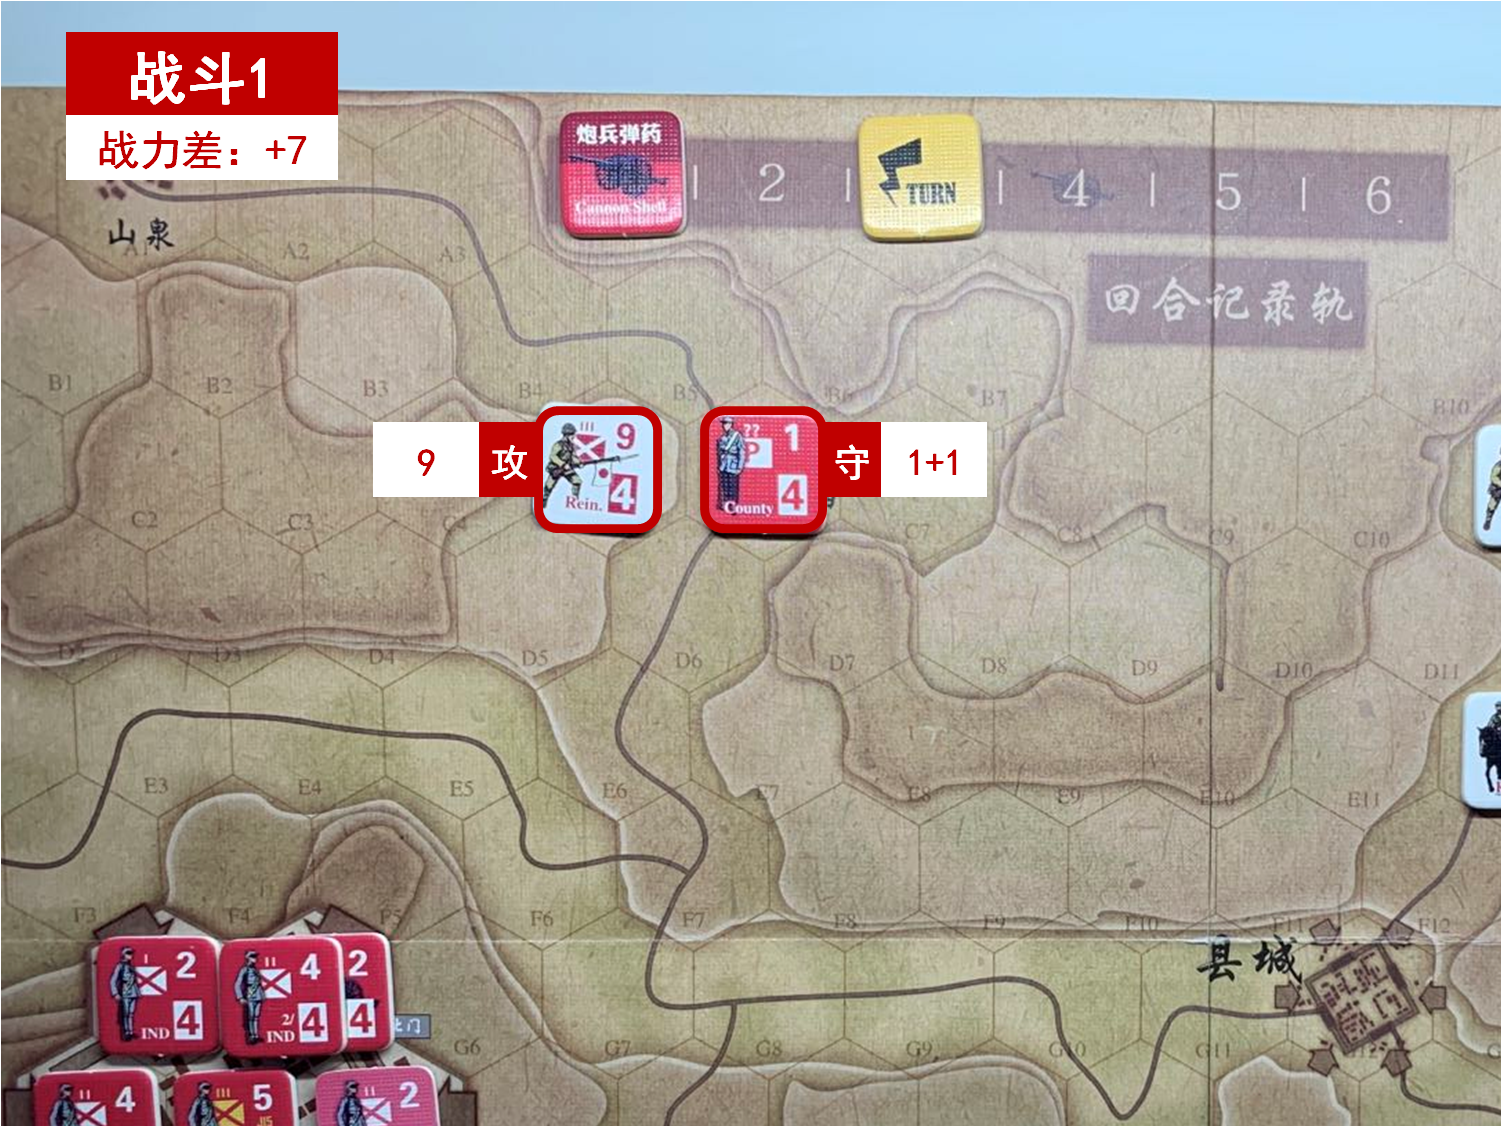 第三回合 日方战斗阶段 战斗1 战斗力差值